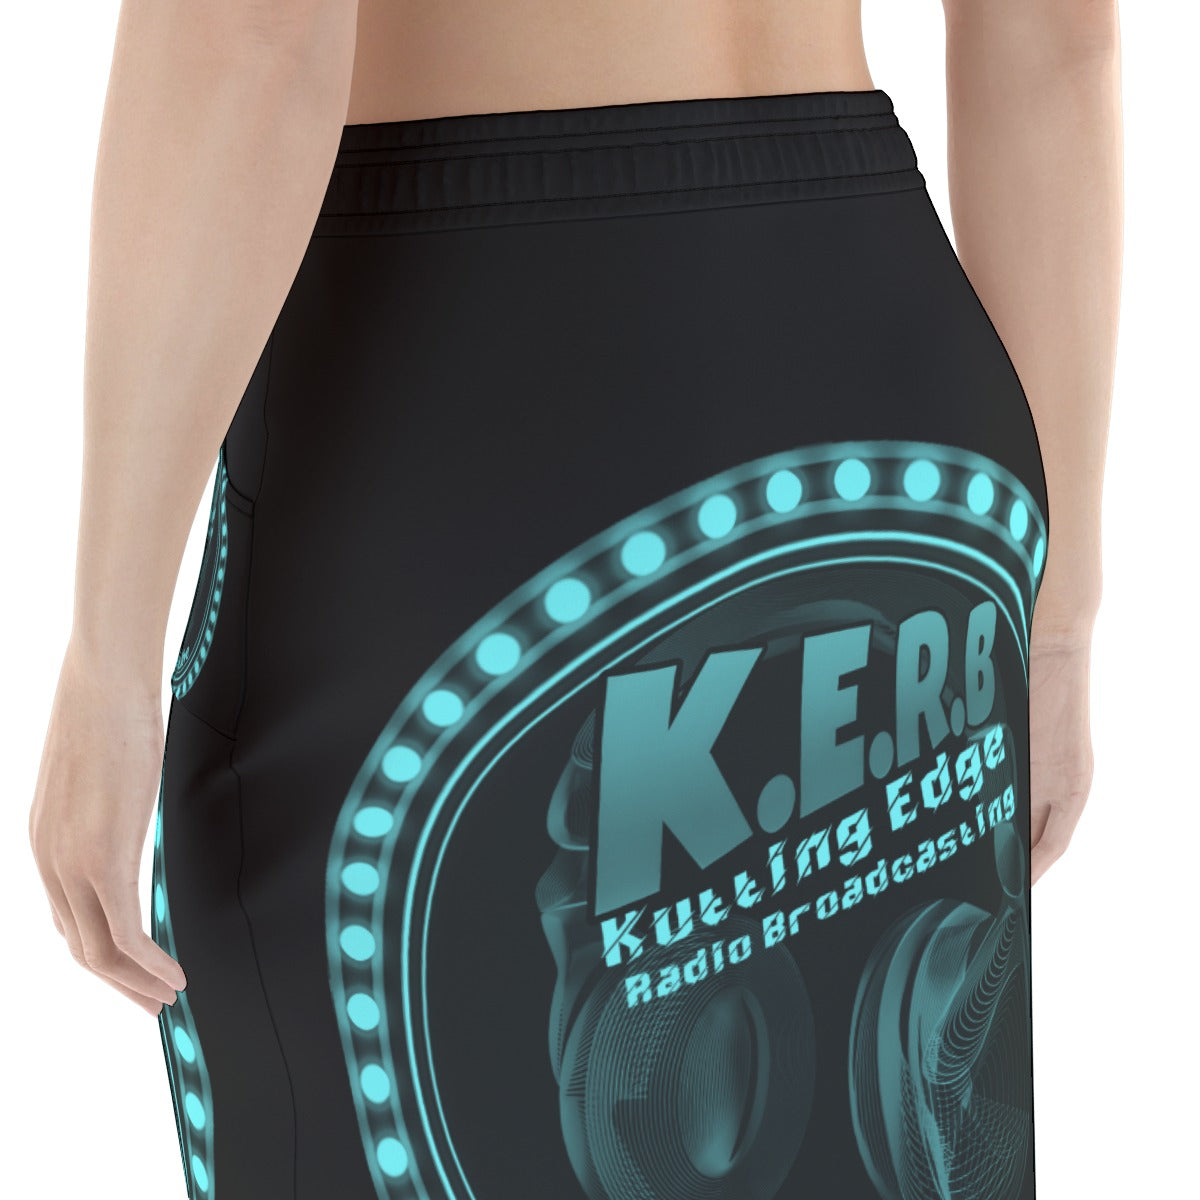 KERB Teal Logo Women's Pencil Skirt